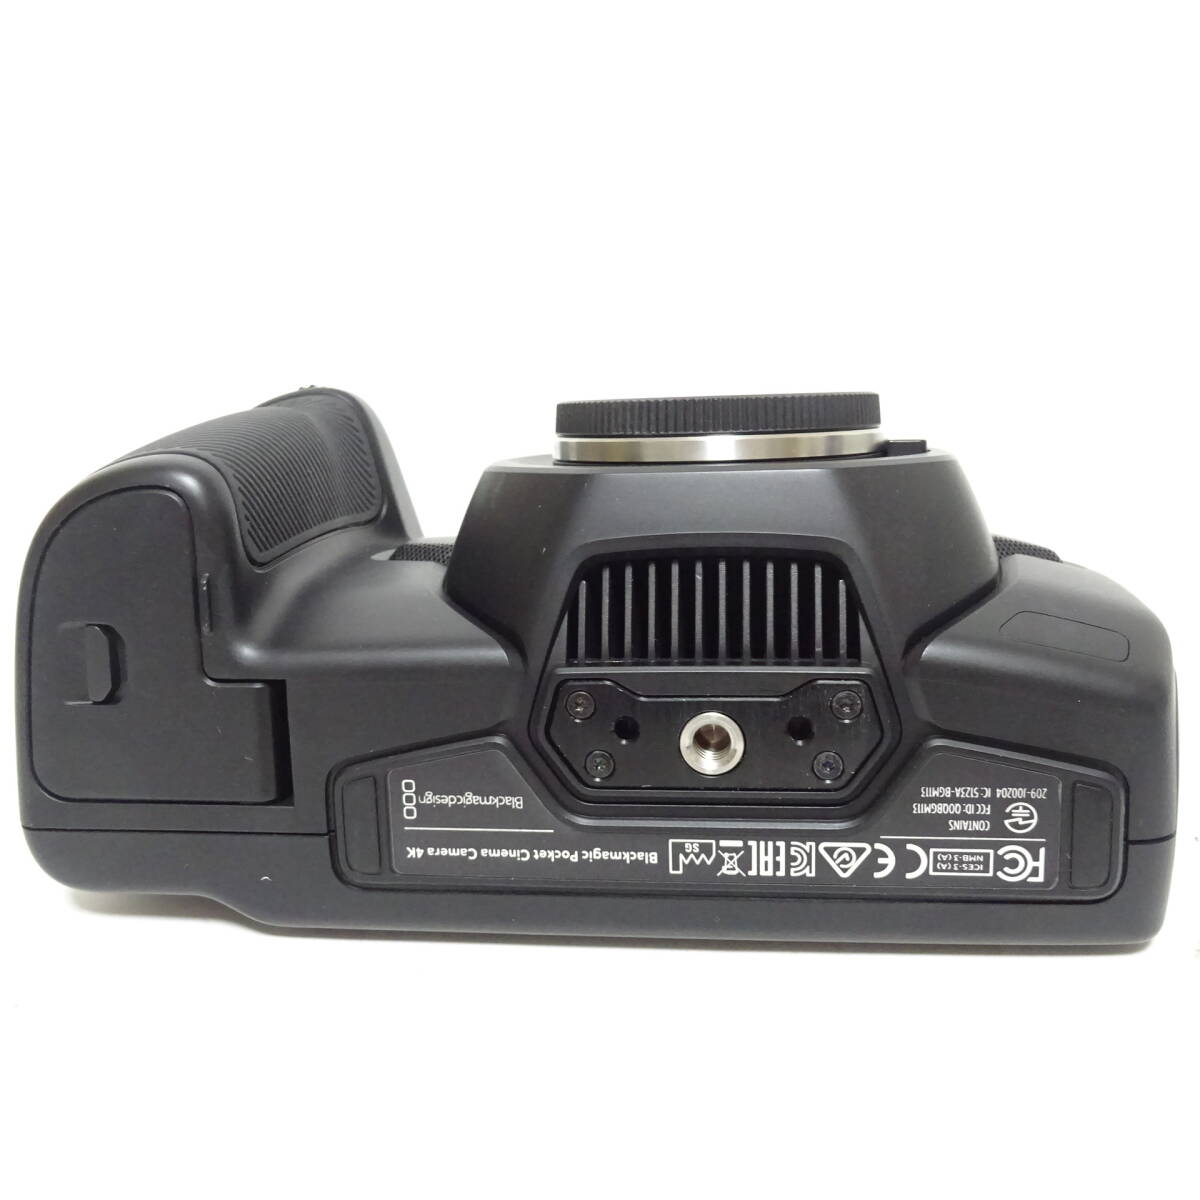  черный Magic дизайн Blackmagic Pocket Cinema Camera 4k работоспособность не проверялась [80 размер / включение в покупку не возможно / Osaka товар ][2546798/283/mrrz]